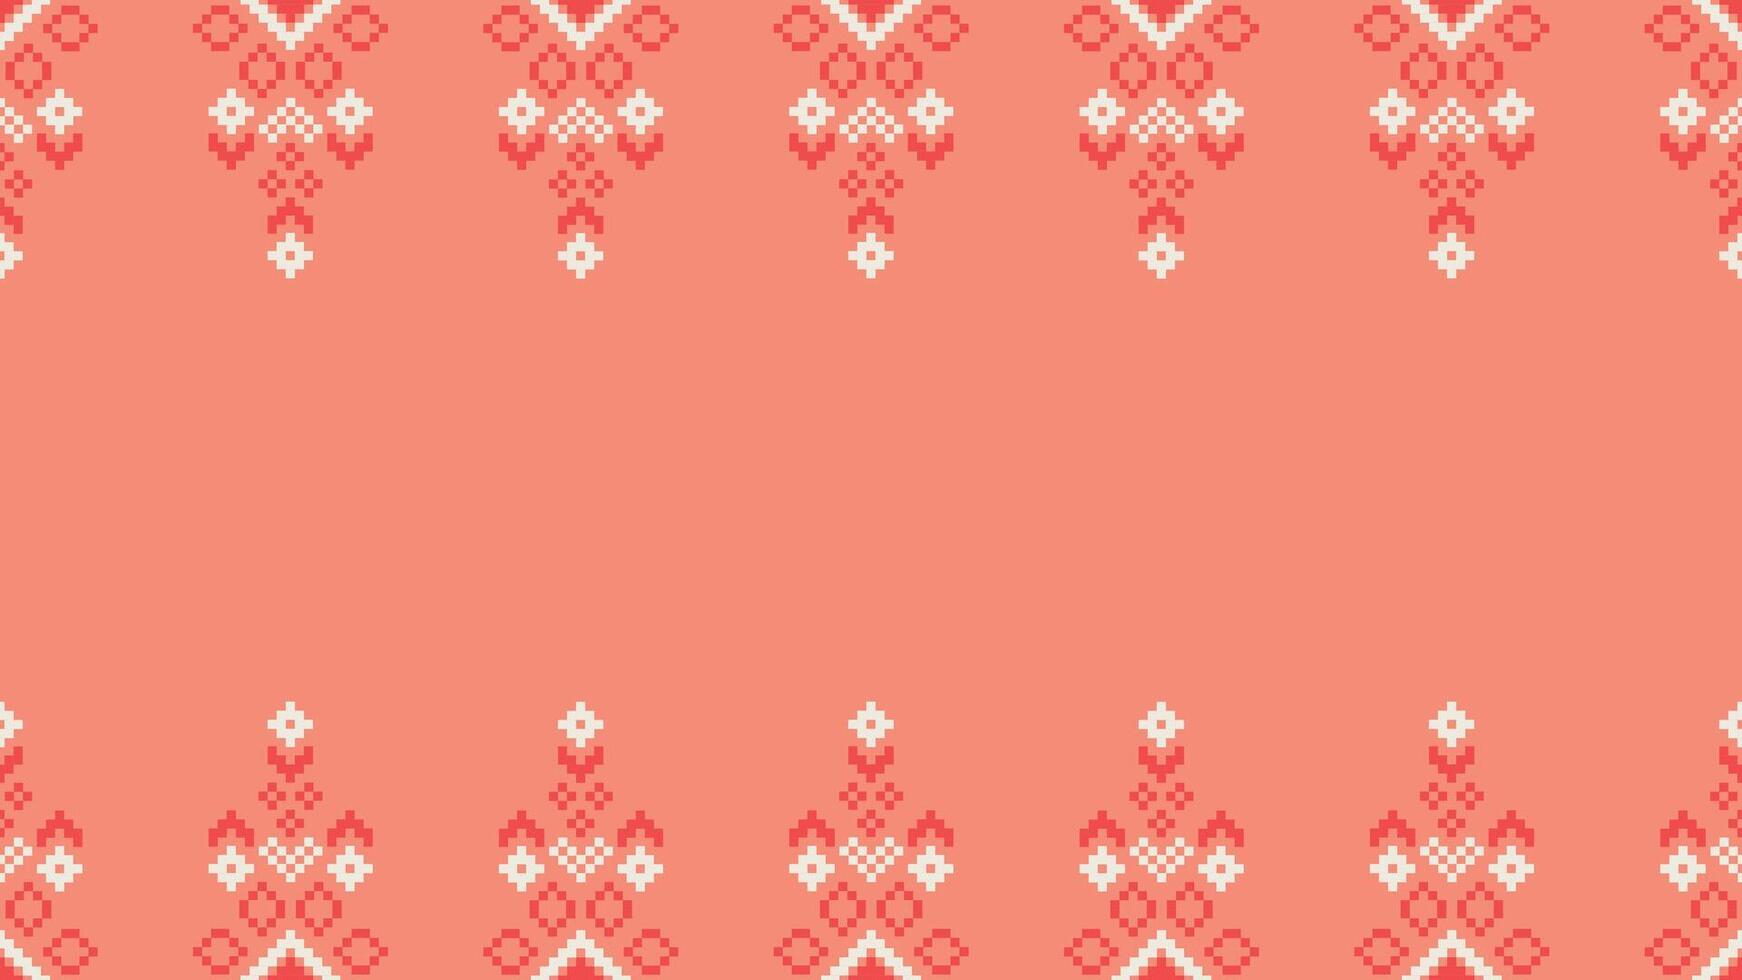 etnisch meetkundig kleding stof patroon kruis steek.ikat borduurwerk etnisch oosters pixel patroon roos roze goud achtergrond. abstract,vector,illustratie. textuur,kleding,sjaal,decoratie,zijde behang. vector